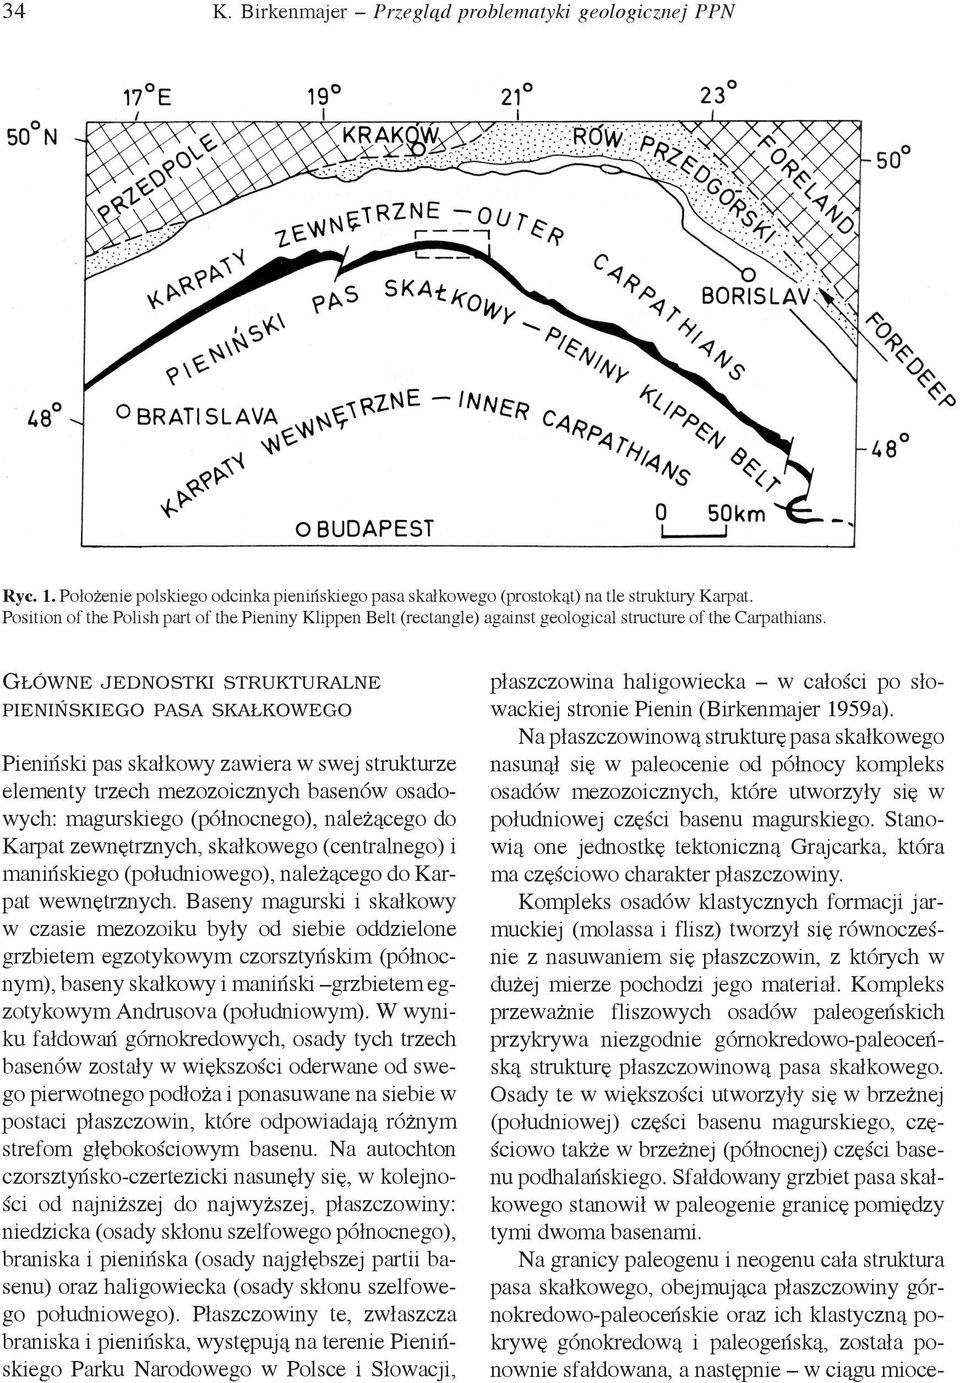 GŁÓWNE JEDNOSTKI STRUKTURALNE PIENIŃSKIEGO PASA SKAŁKOWEGO Pieniński pas skałkowy zawiera w swej strukturze elementy trzech mezozoicznych basenów osadowych: magurskiego (północnego), należącego do